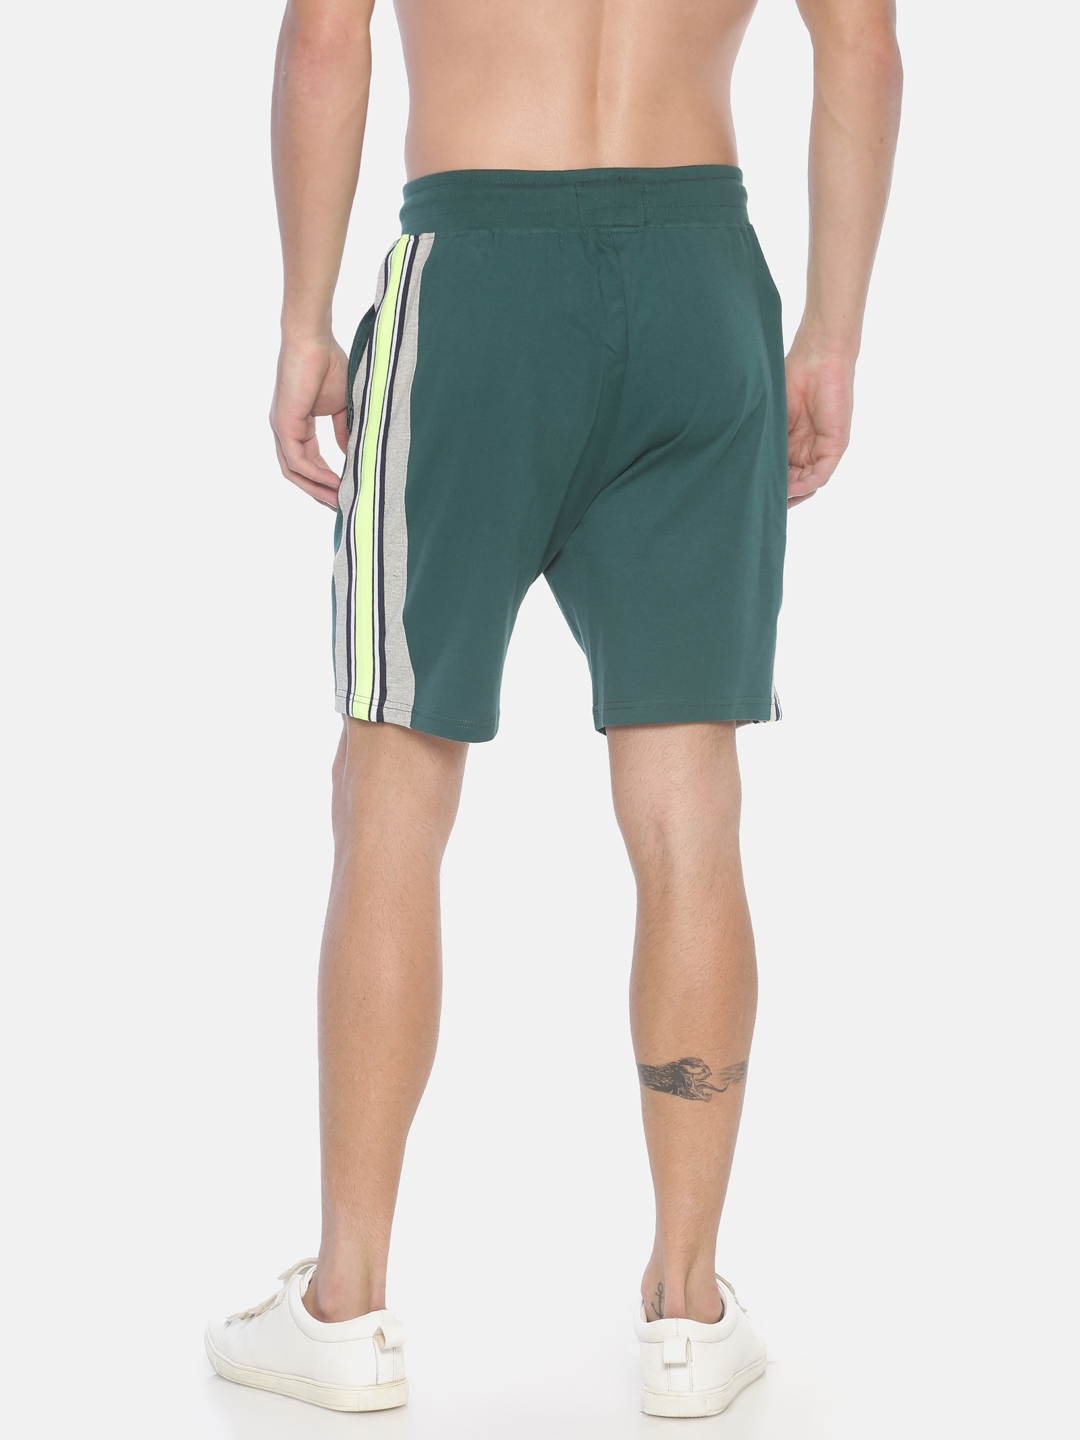 Steenbok | Steenbok Men's Dark Green Shorts 2